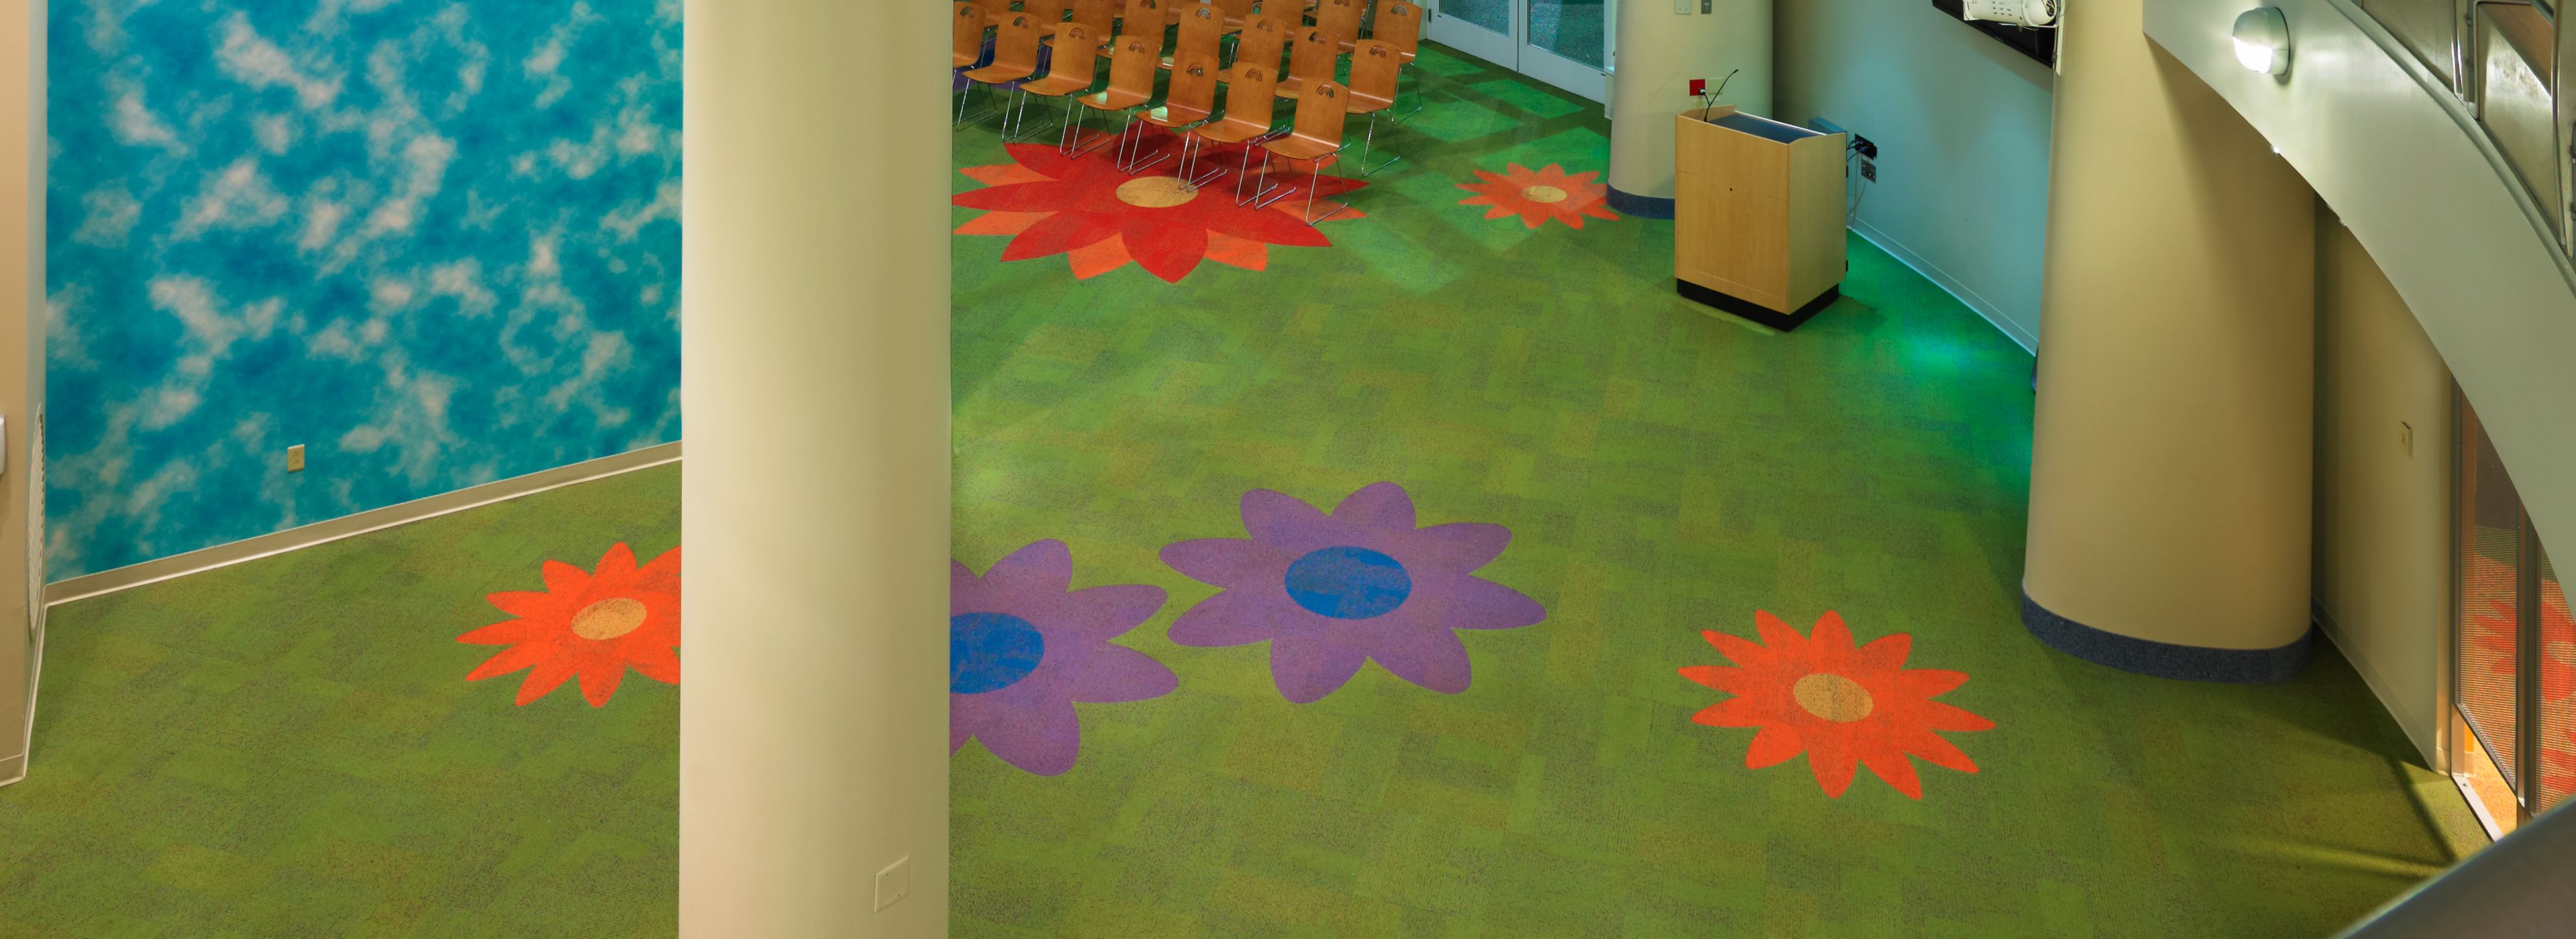 Interface Cubic Colours carpet tile cut into flower shapes image number 1